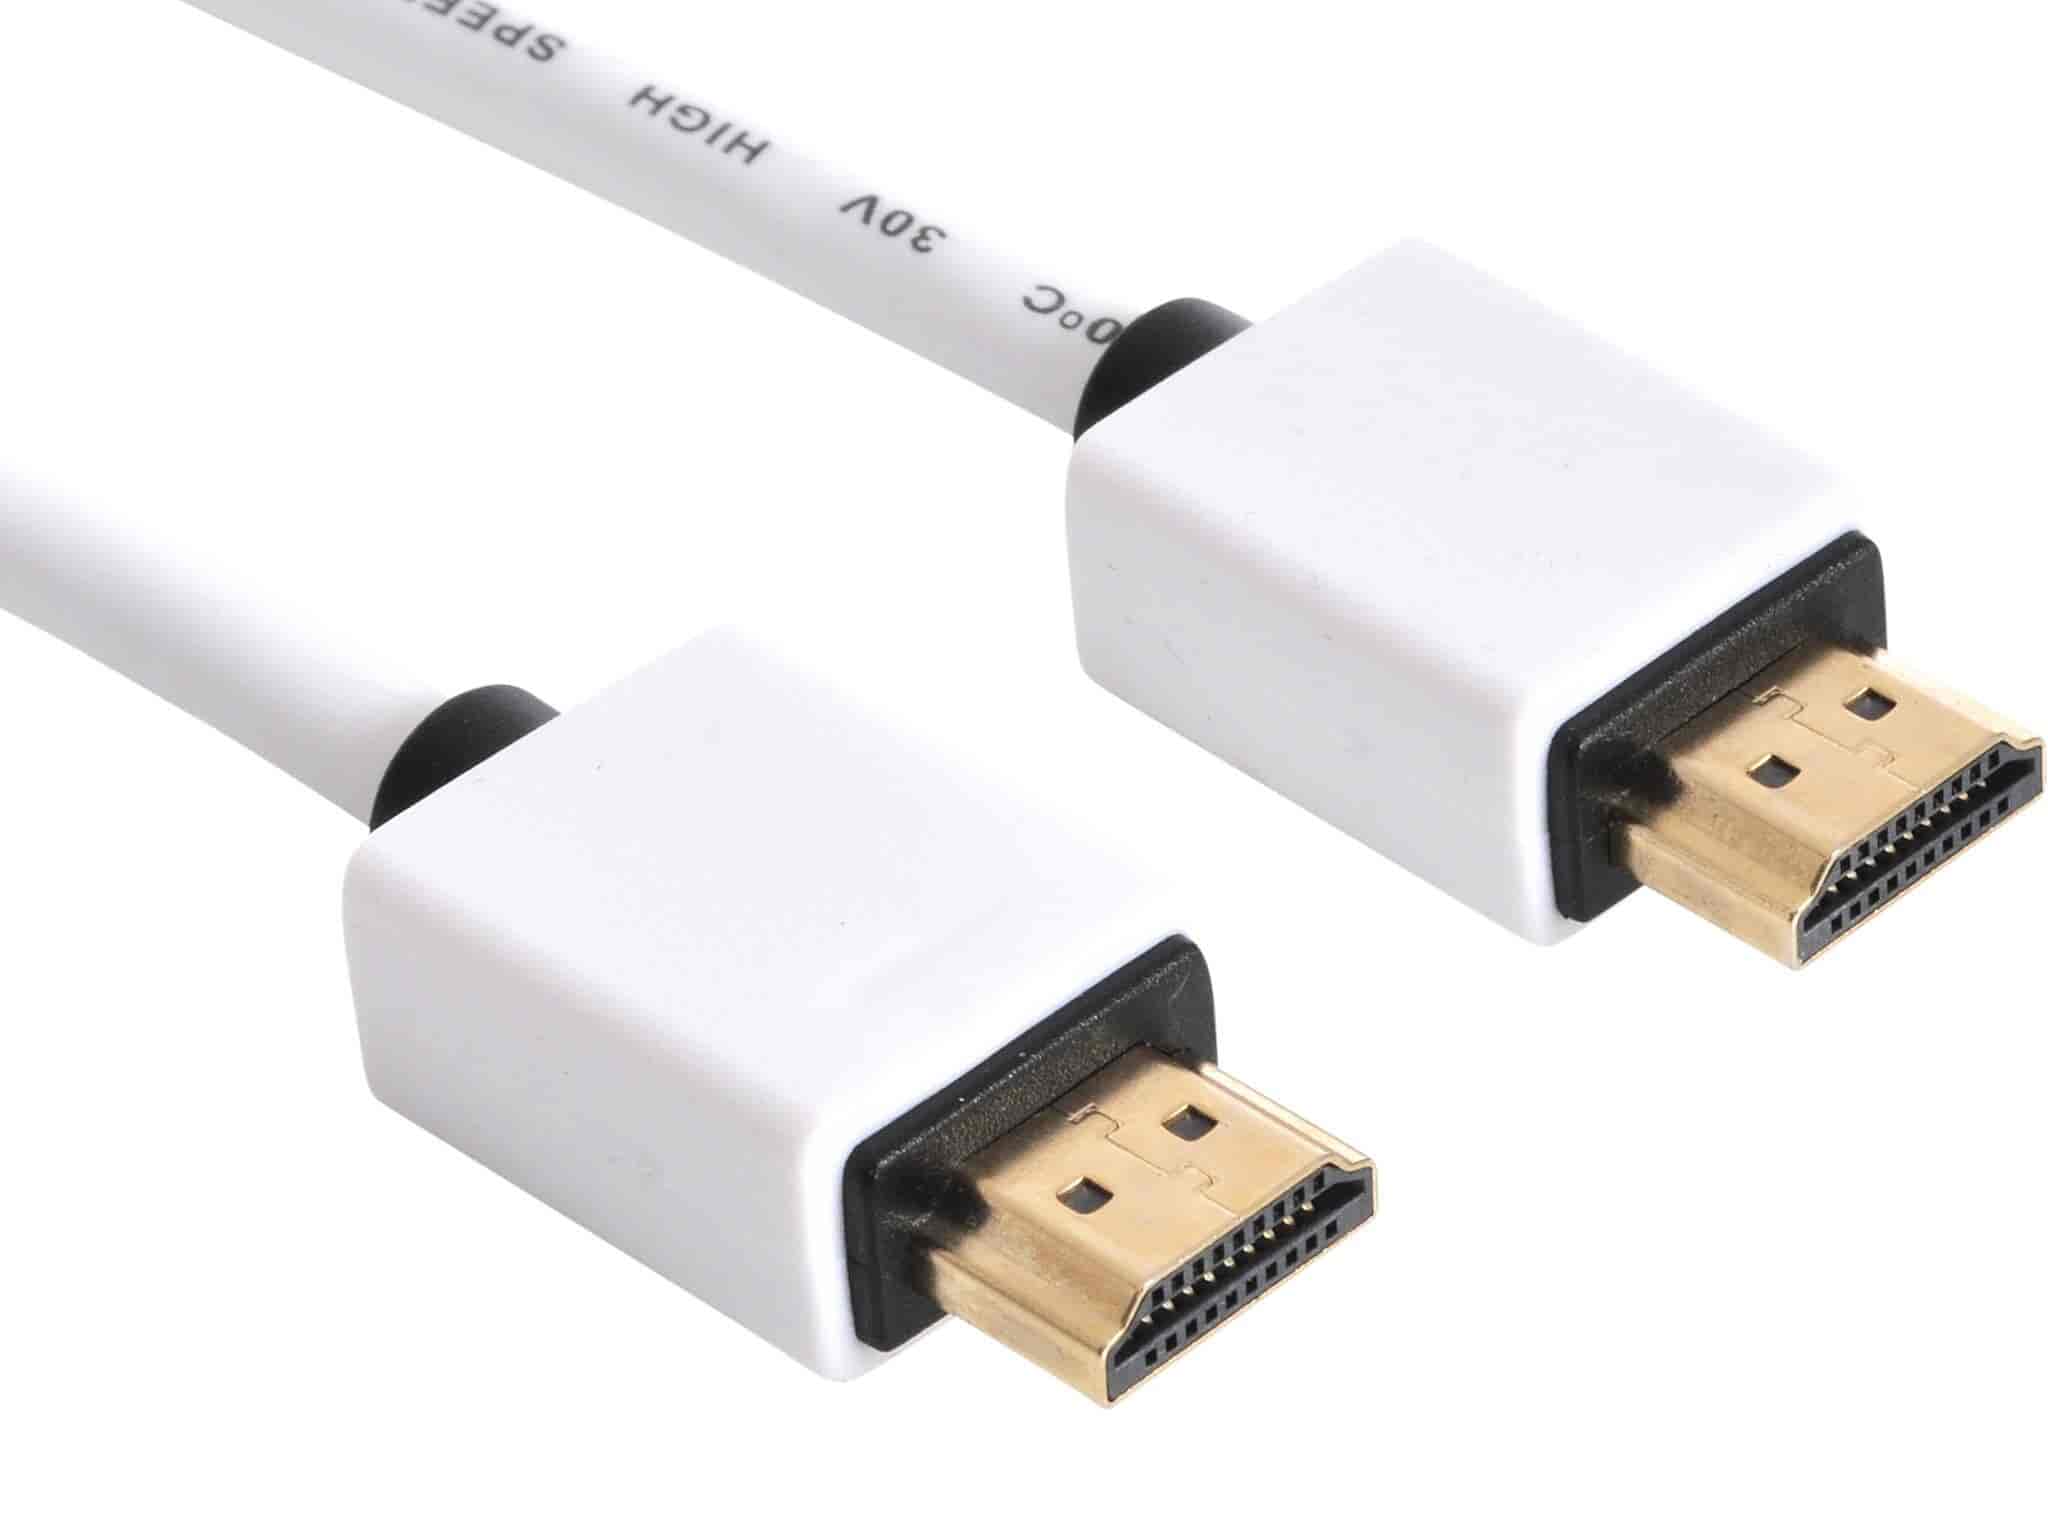 HDMI 2.0 kabel. SAVER version - Et HDMI kabel i god kvalitet til en skarp pris.